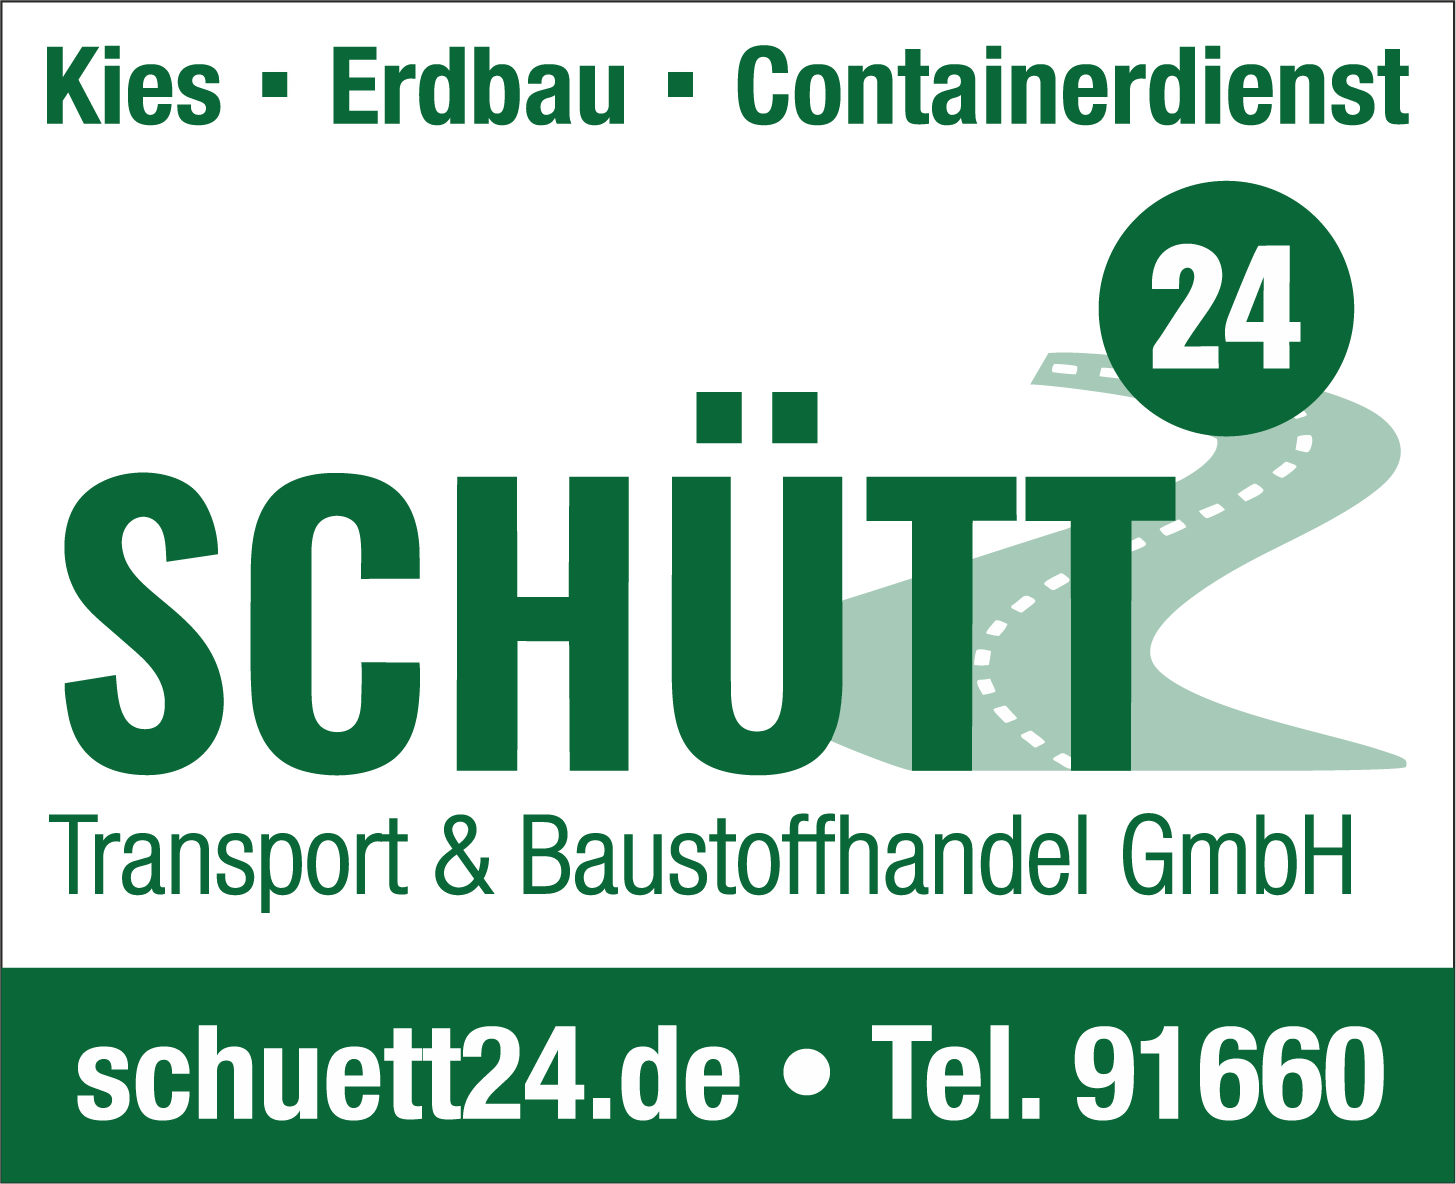 Schütt Transport & Baustoffhandel